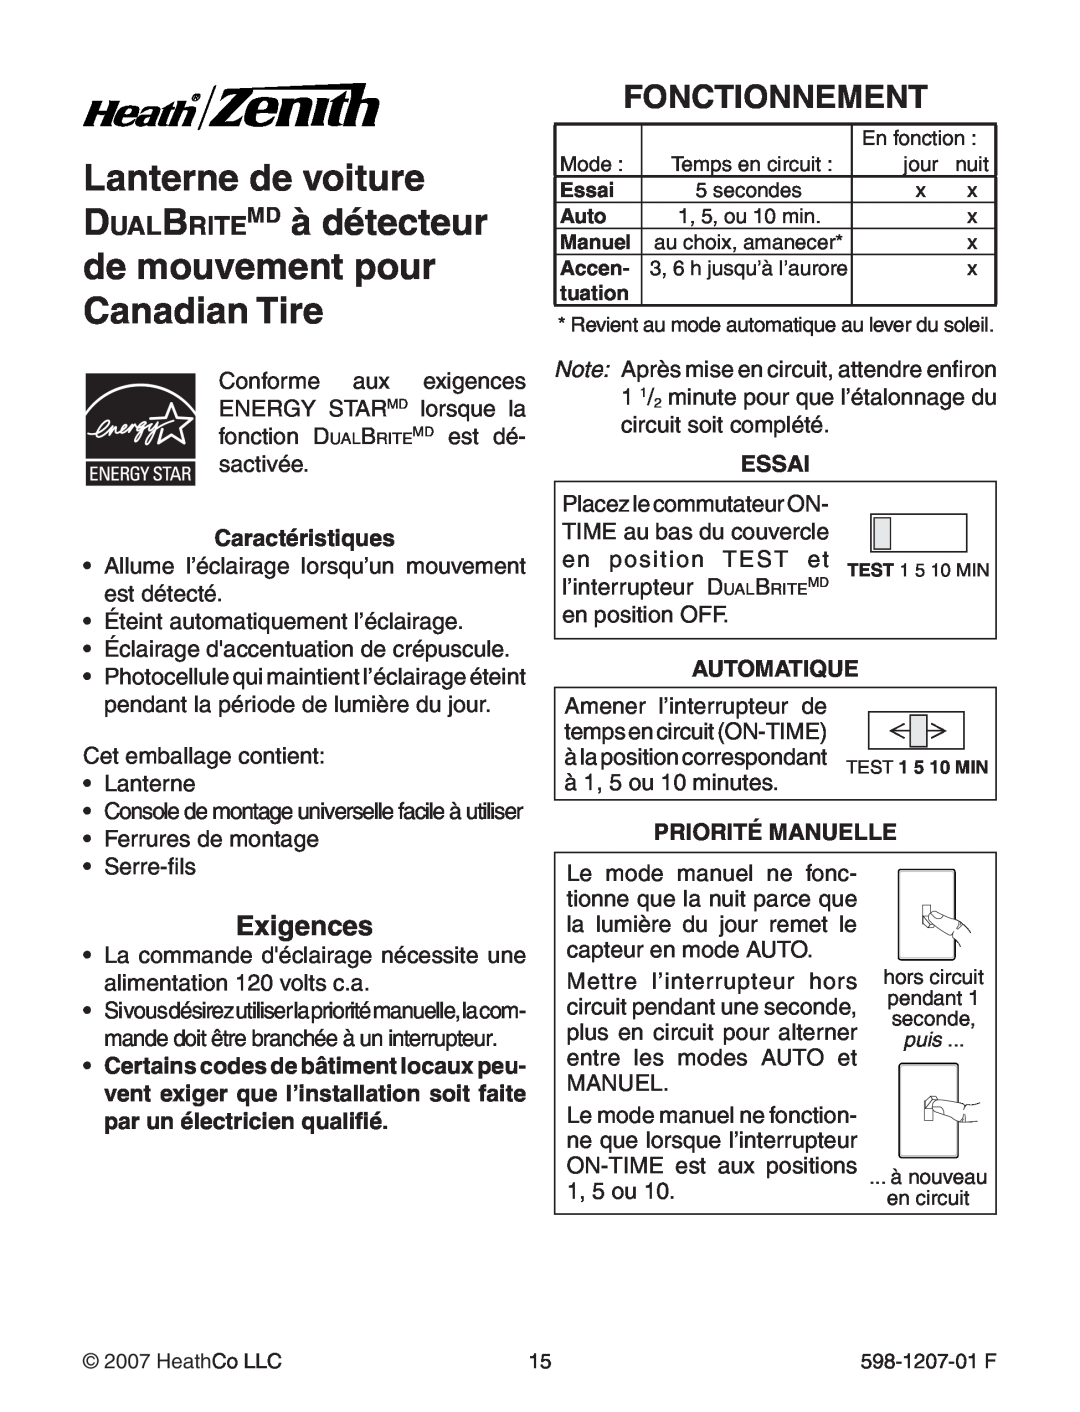 Heath Zenith Motion Sensing Coach Lights manual Fonctionnement, Exigences, Caractéristiques, Essai, Automatique 